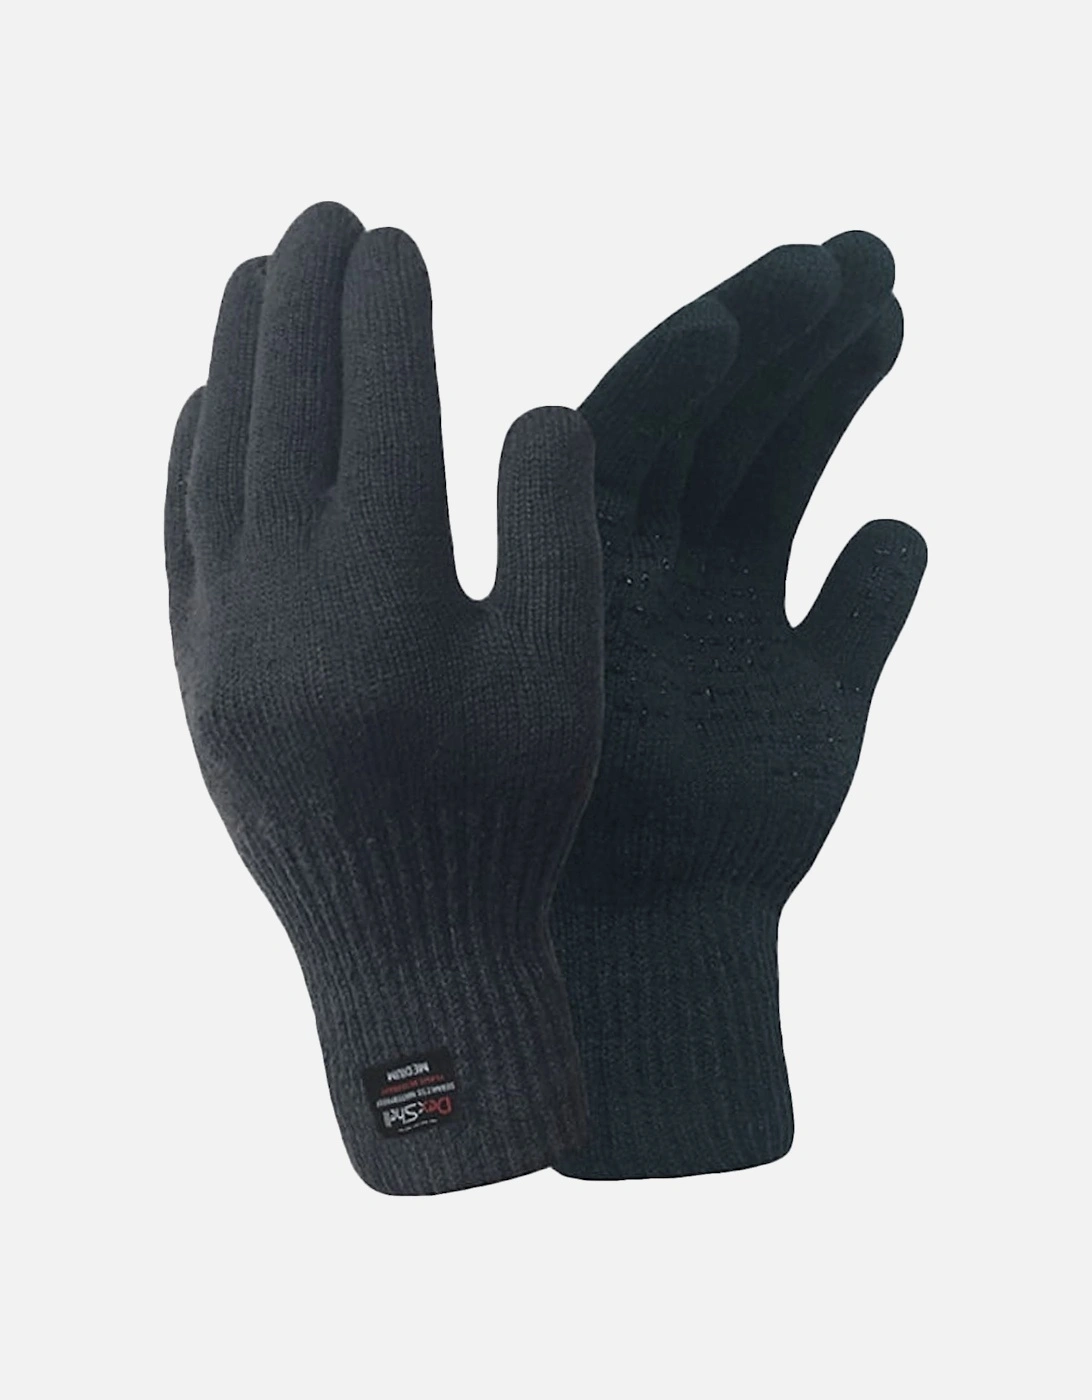 Mens Flame Retardant Cut Resistant Waterproof Gloves - Black, 2 of 1